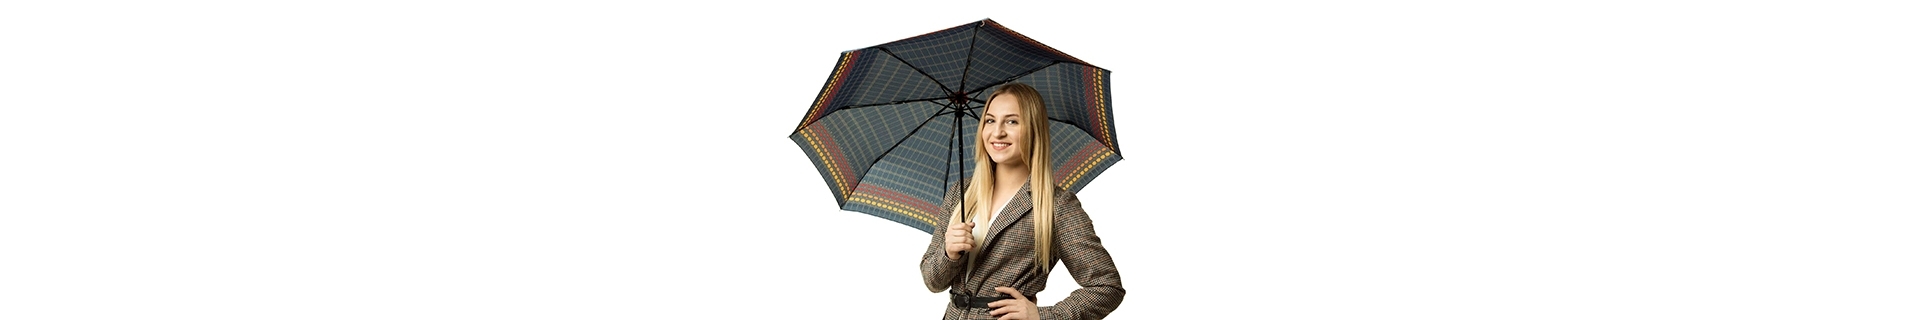 Damskie parasolki automatyczne - parasolki składane